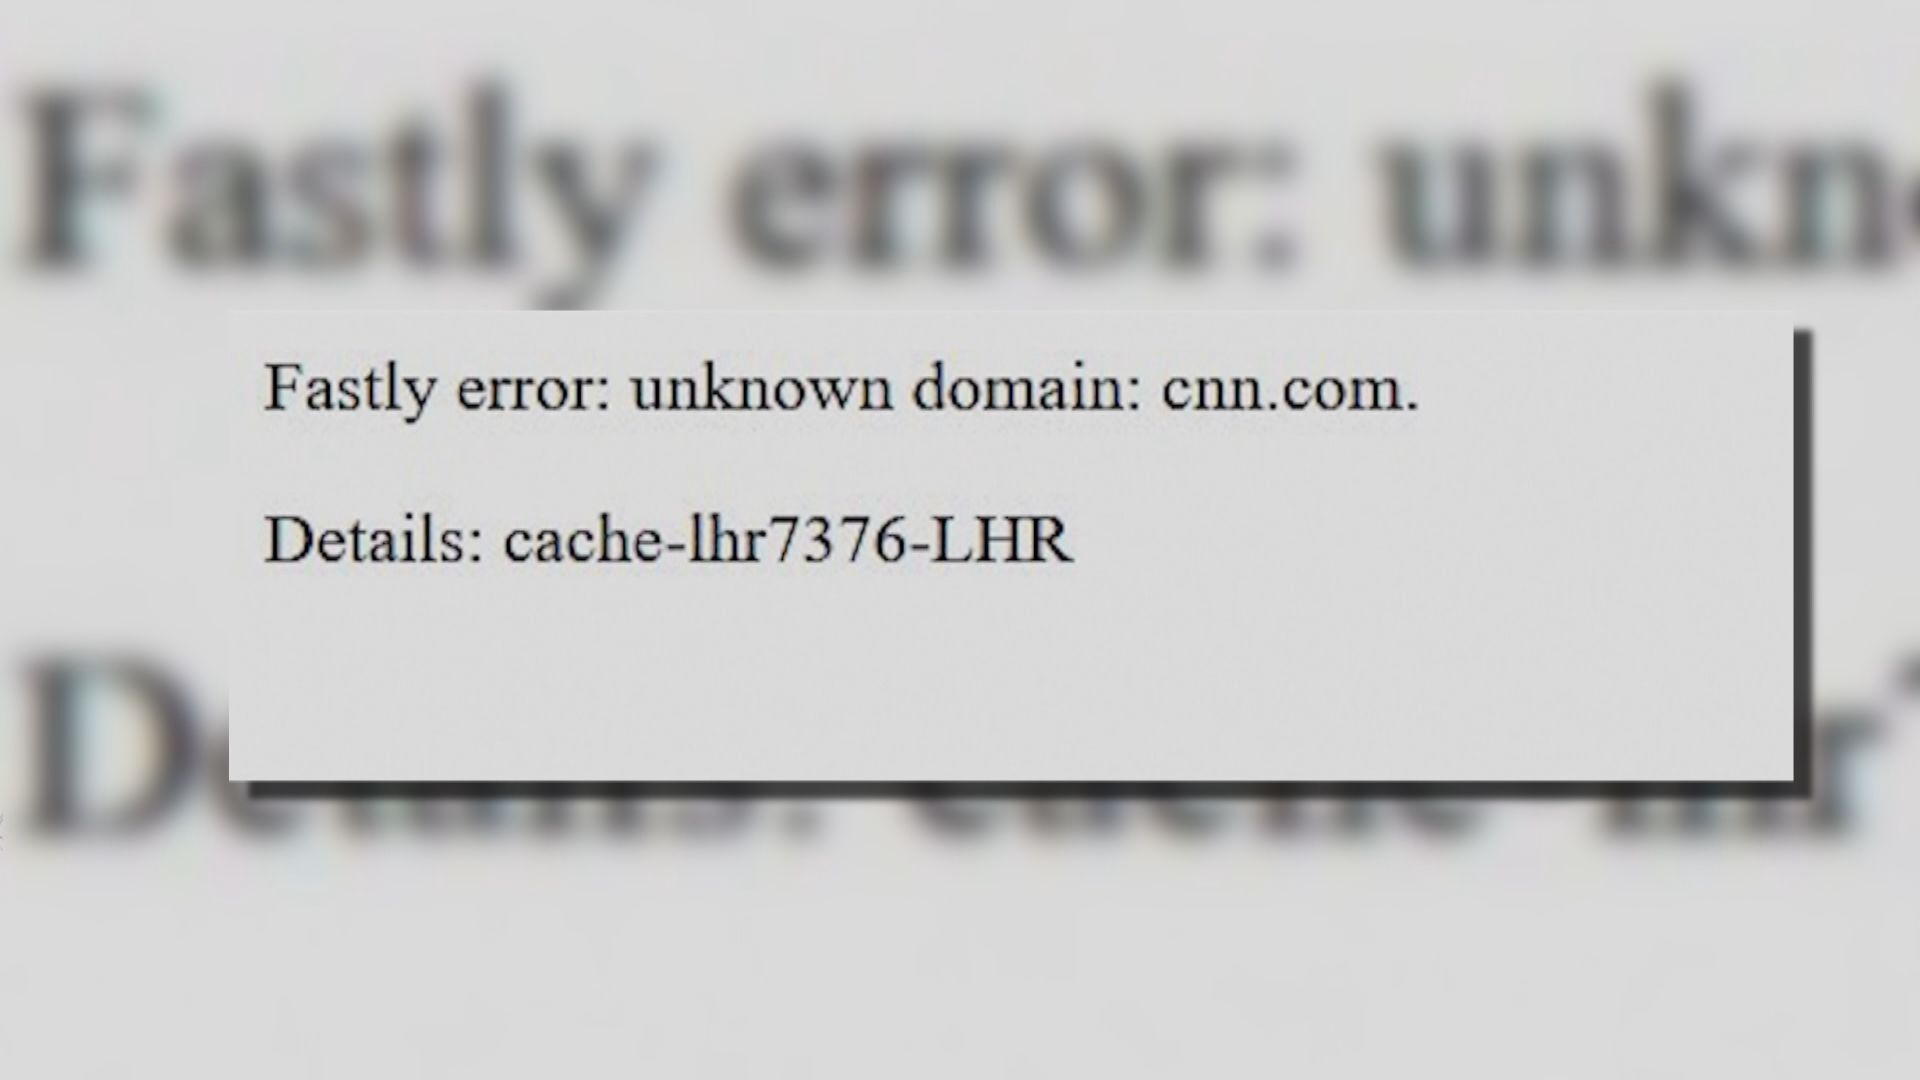 雲端服務商Fastly：用戶意外觸發錯誤程式致網站連線中斷